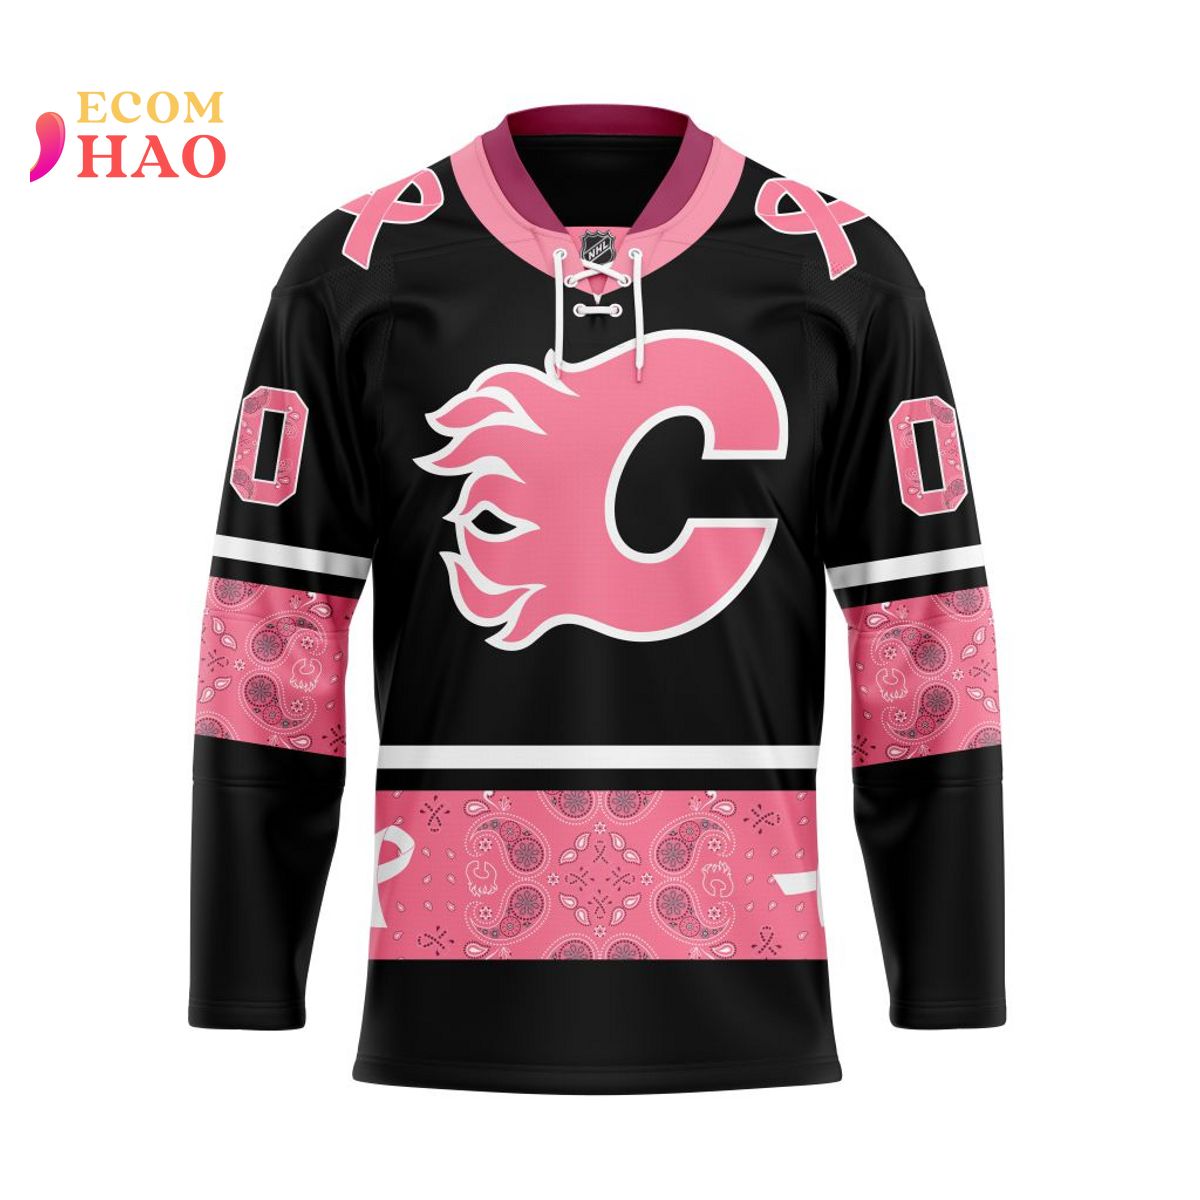 Calgary Flames – CollectibleXchange